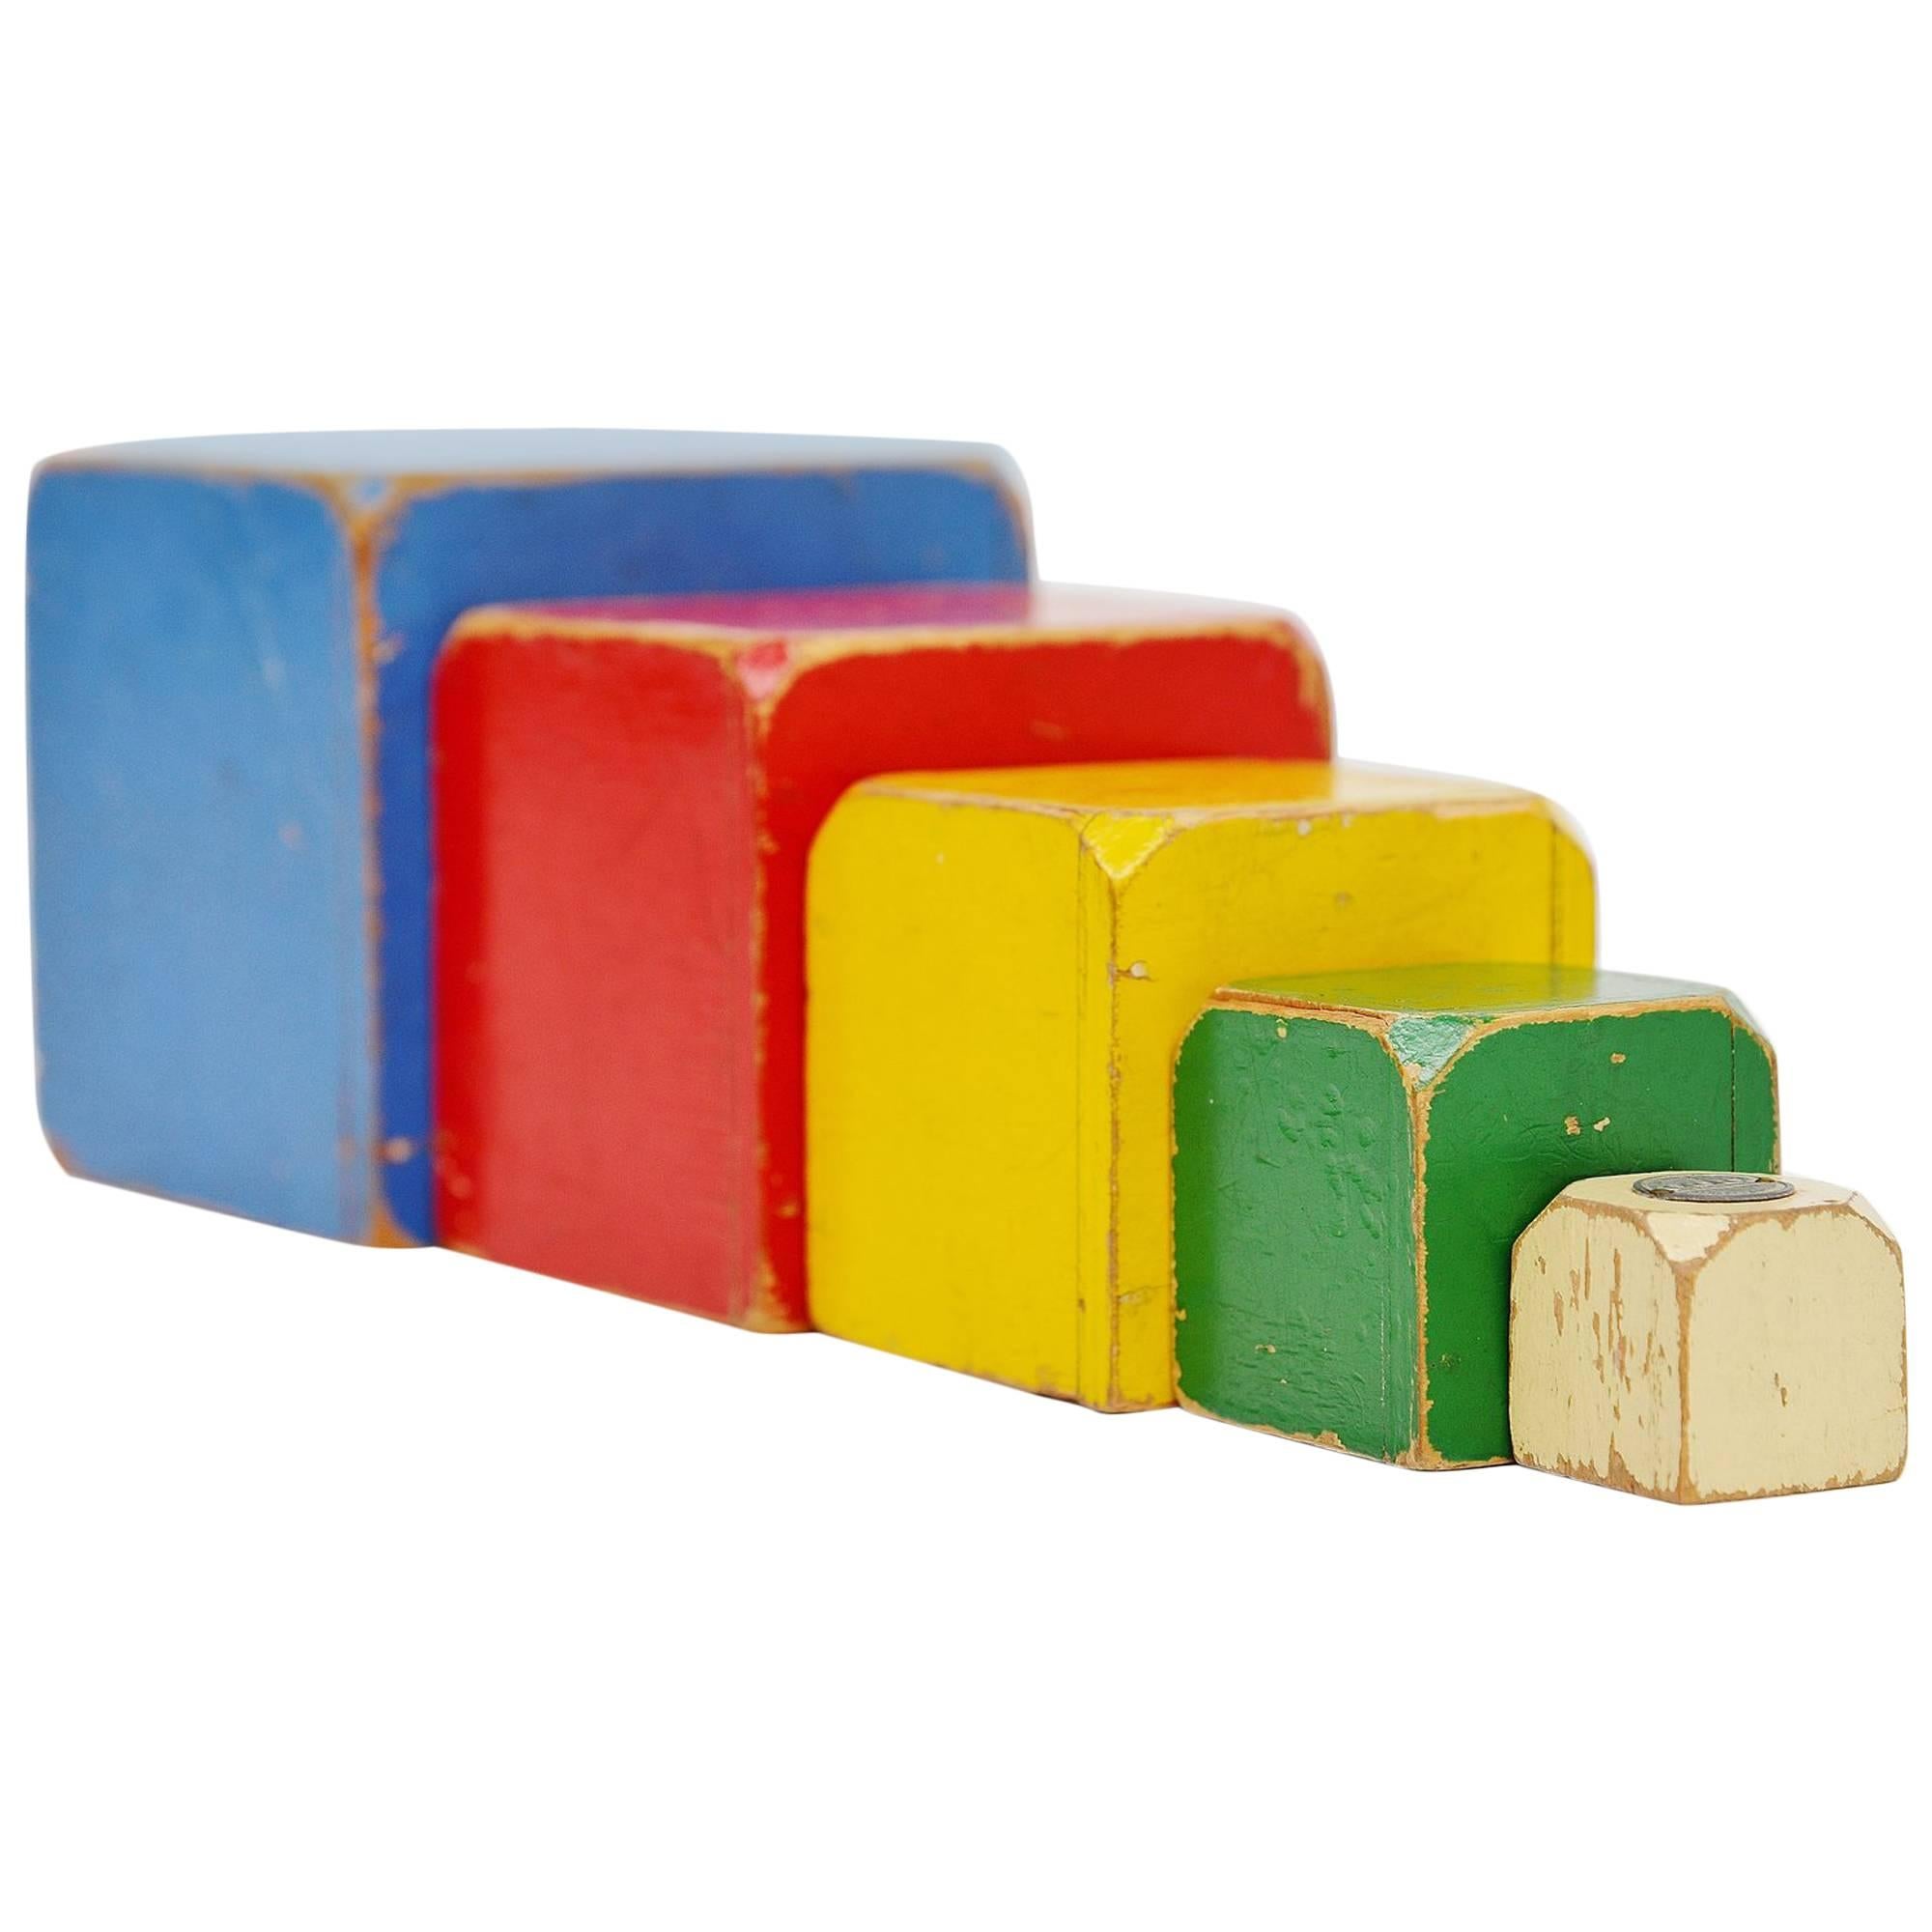 Ado Toy Cubes Set Ko Verzuu, 1950 For Sale